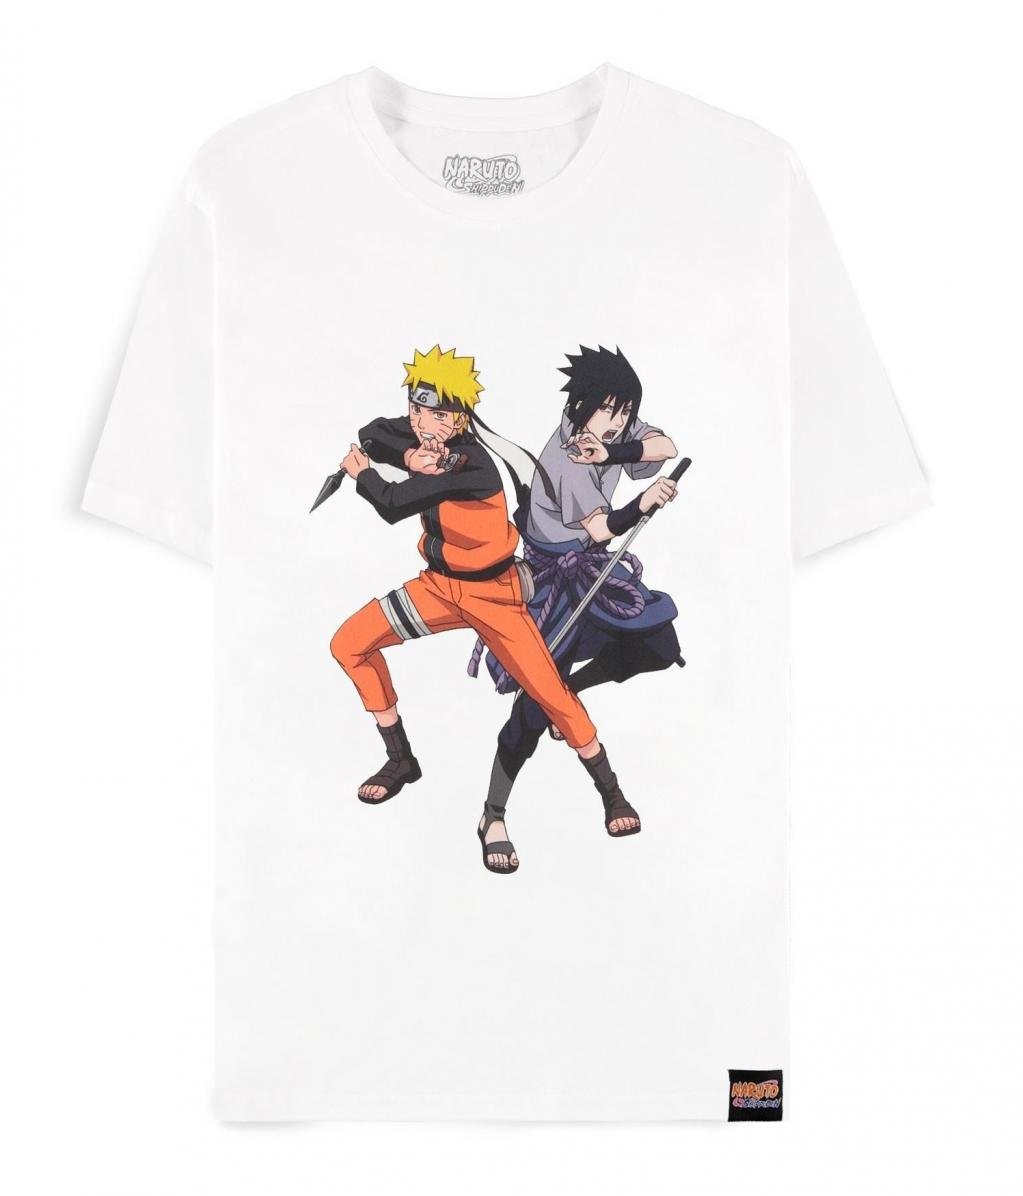 NARUTO SHIPPUDEN - Sasuke & Naruto  - T-Shirt Homme (L)